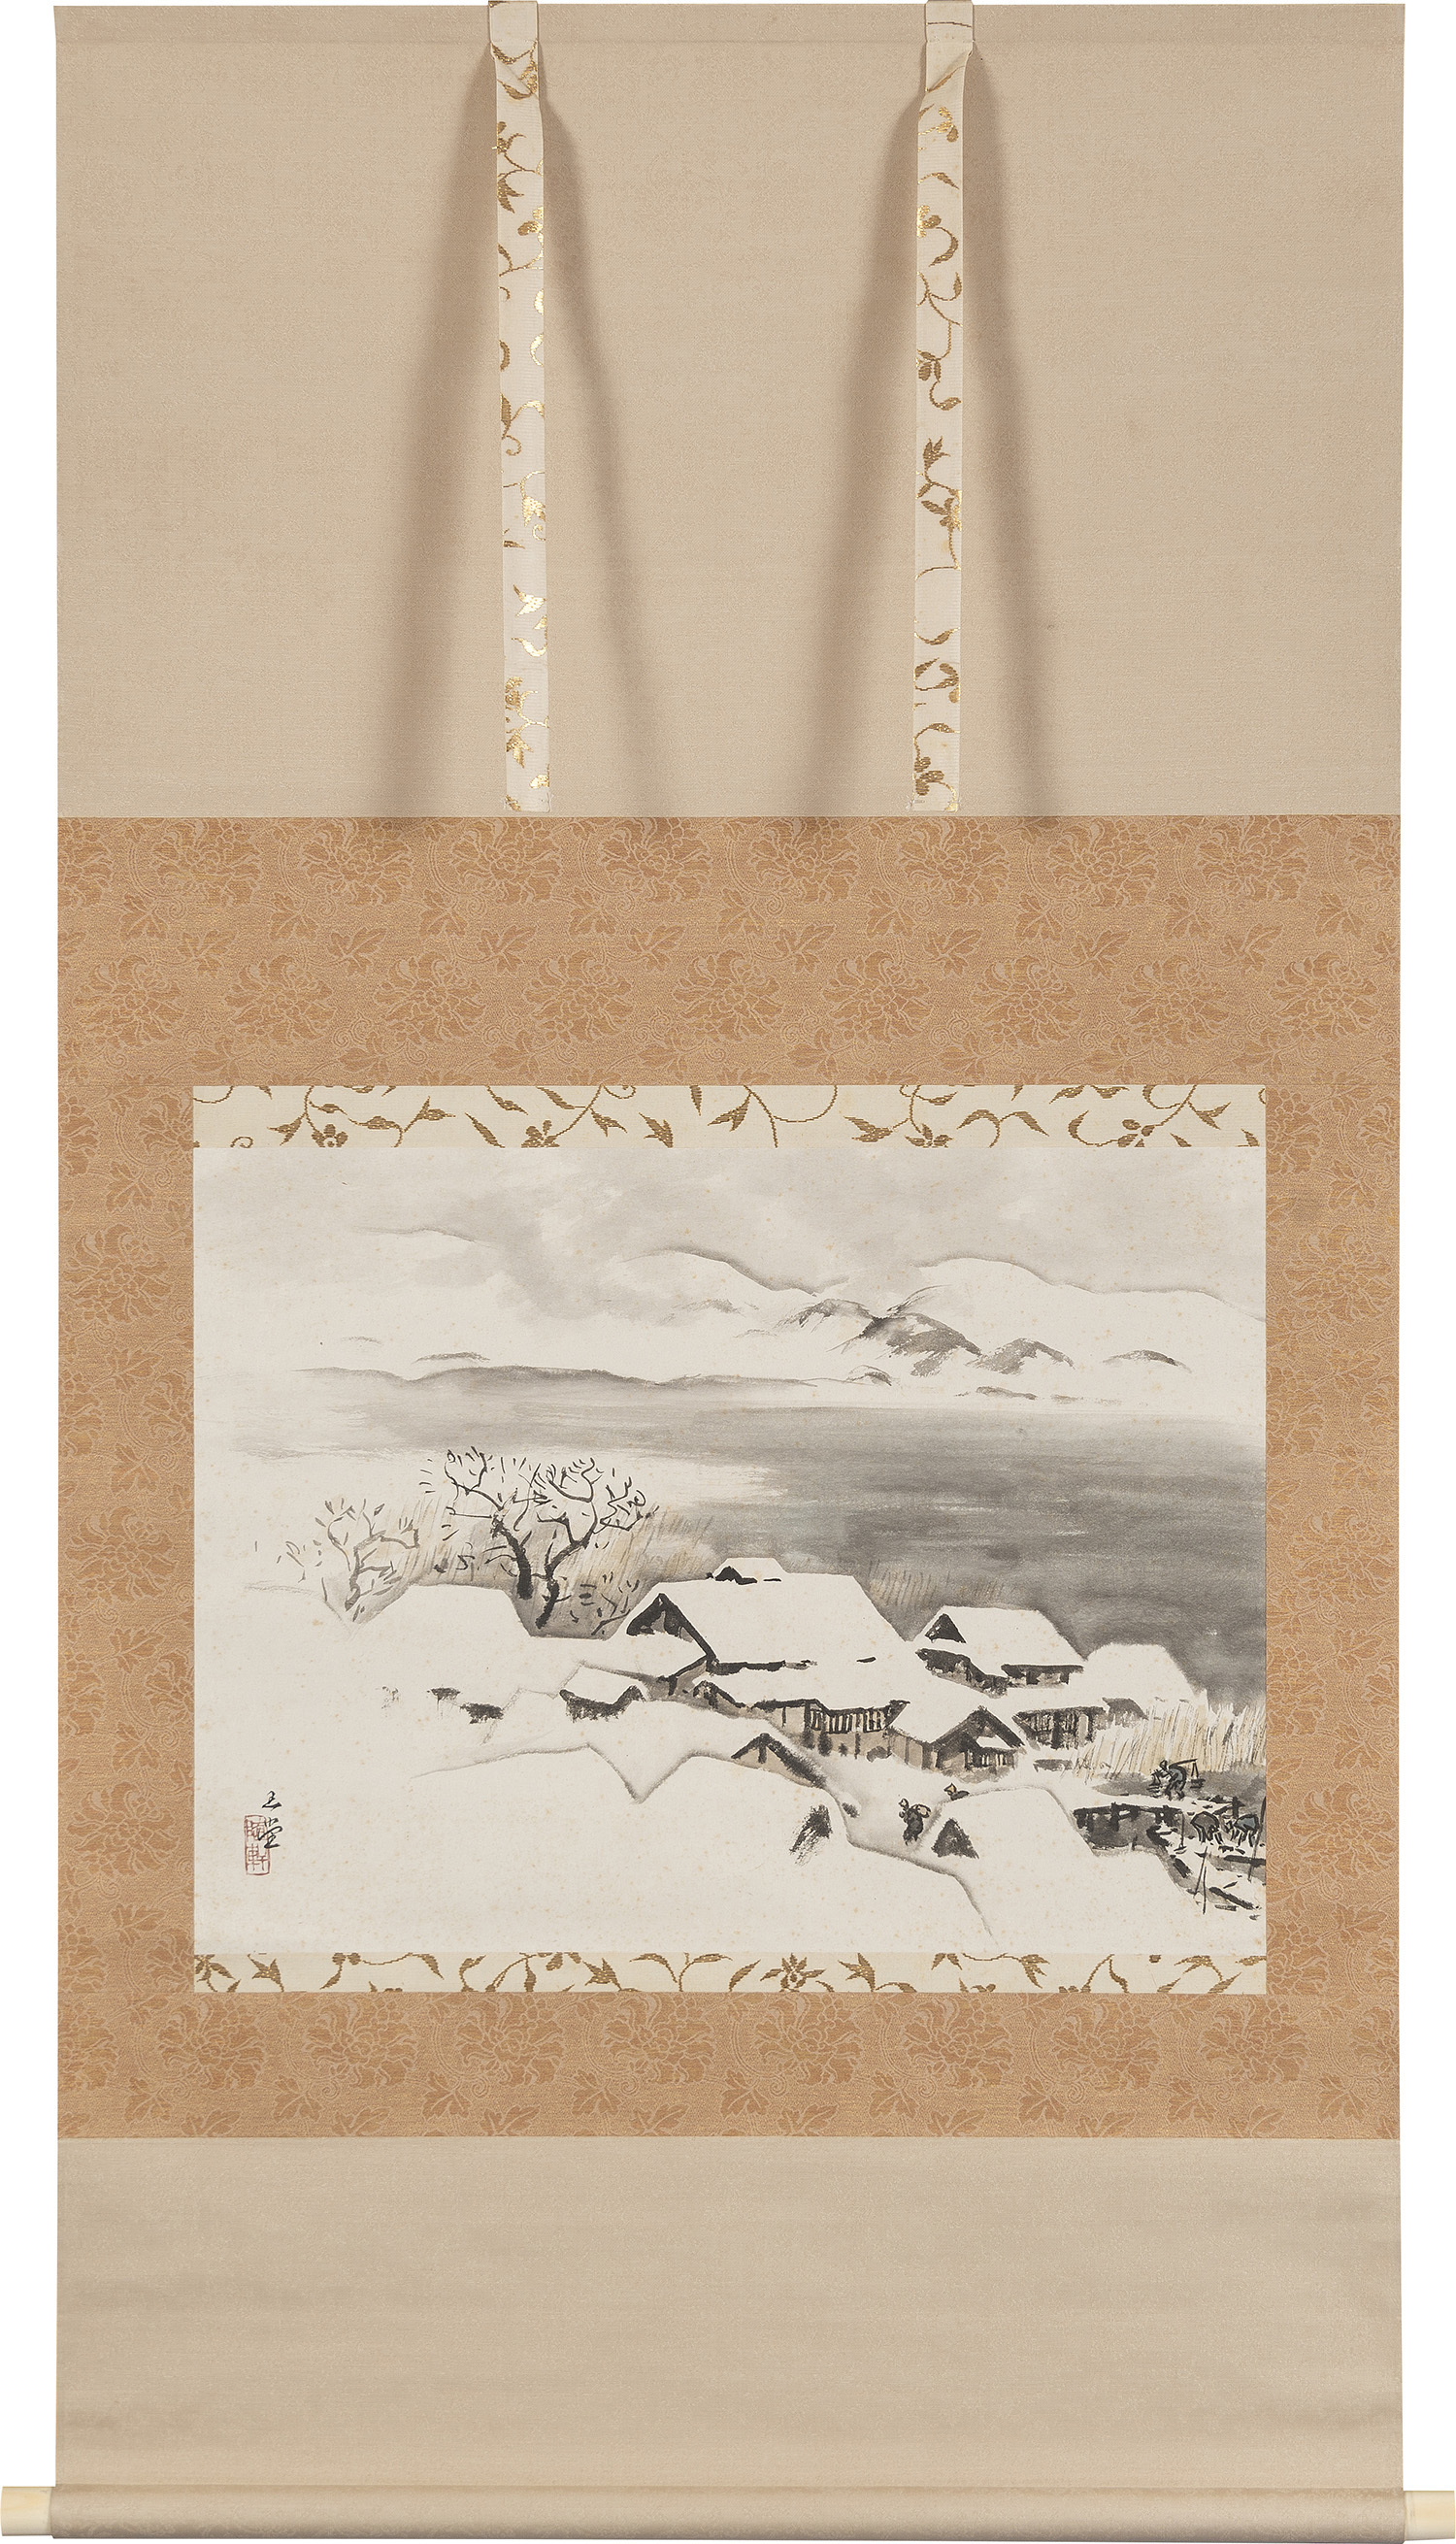 川合玉堂《雪景の図》 1950年代 パナソニック株式会社蔵